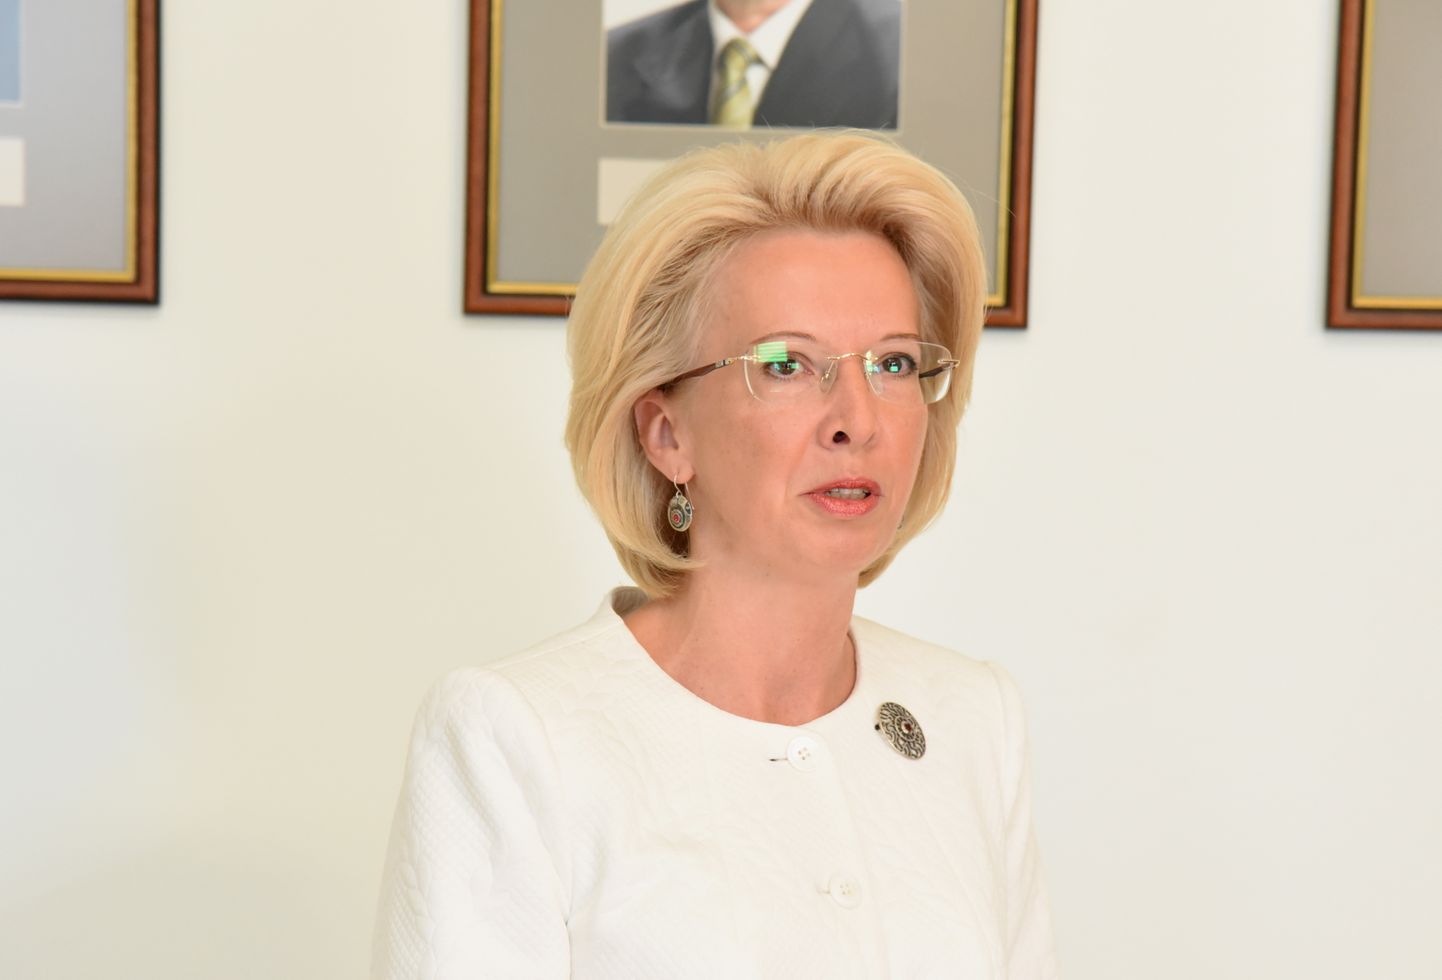 Saeimas priekšsēdētāja Ināra Mūrniece saka uzrunu Saeimas priekšsēdētāja vietas izpildītāja trimdā Jāzepa Rancāna fotogrāfijas atklāšanā Saeimas priekšsēdētāju portretu galerijā